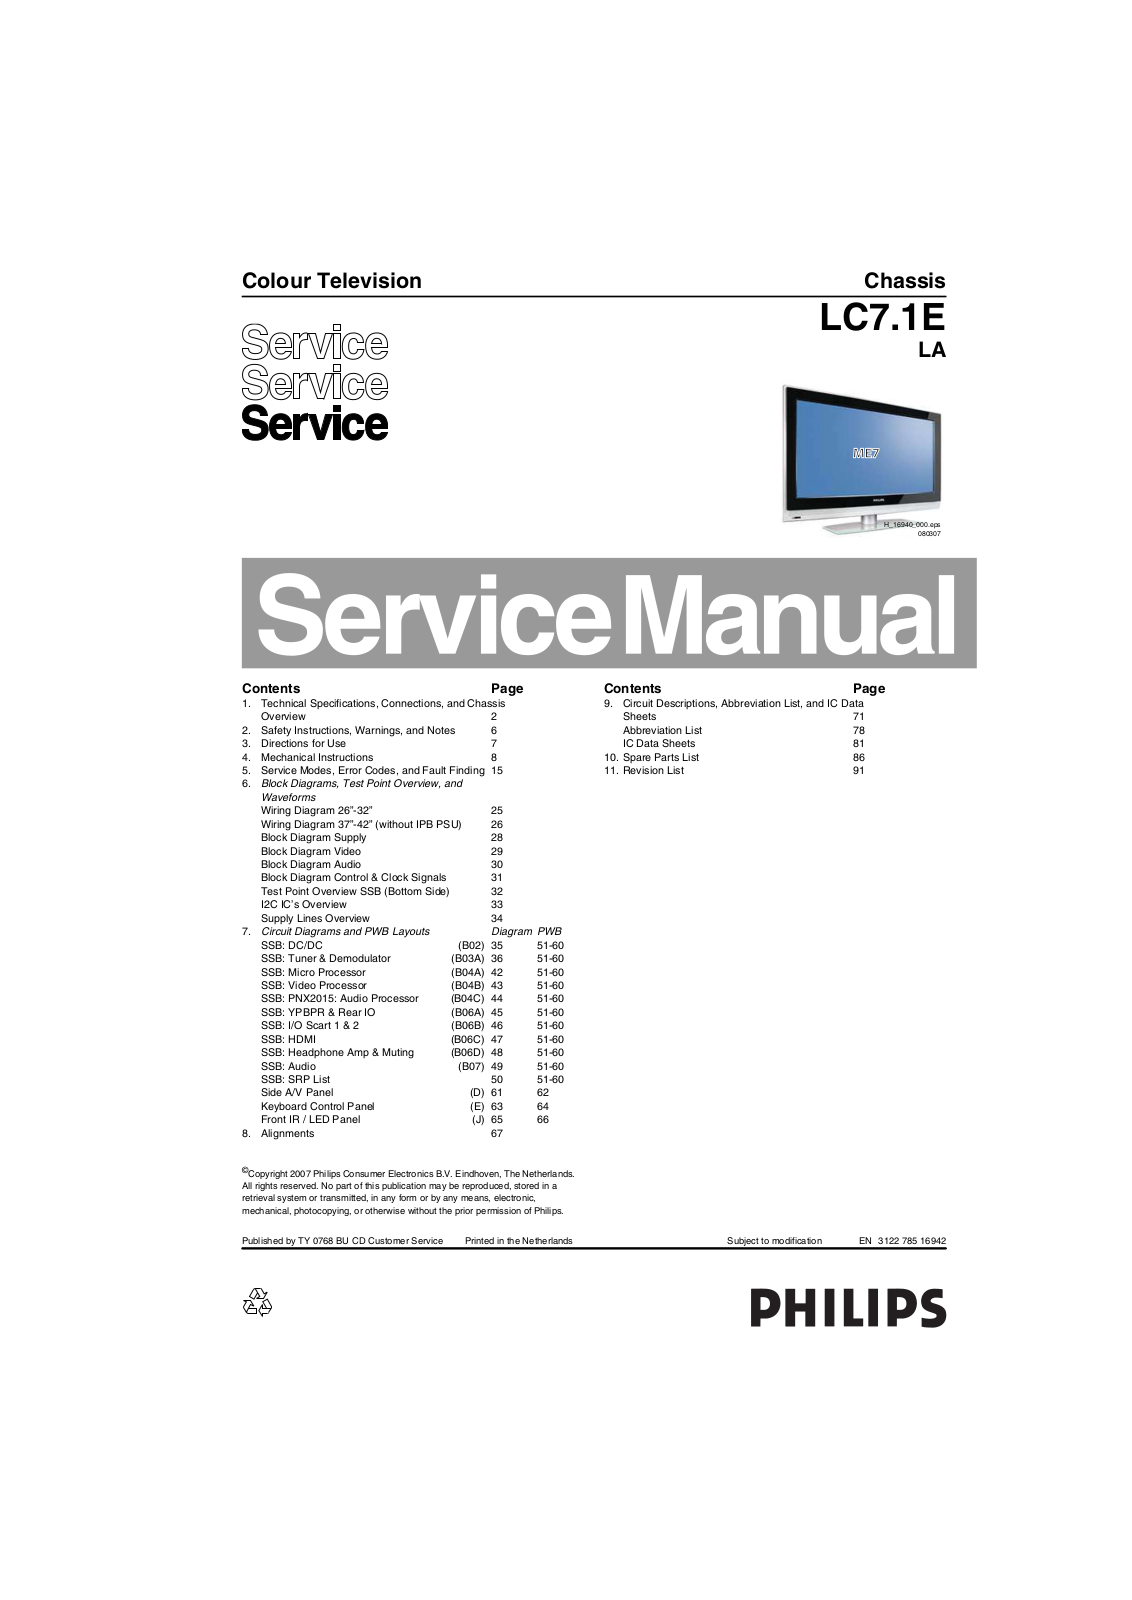 Philips LC7.1E LA Service Manual